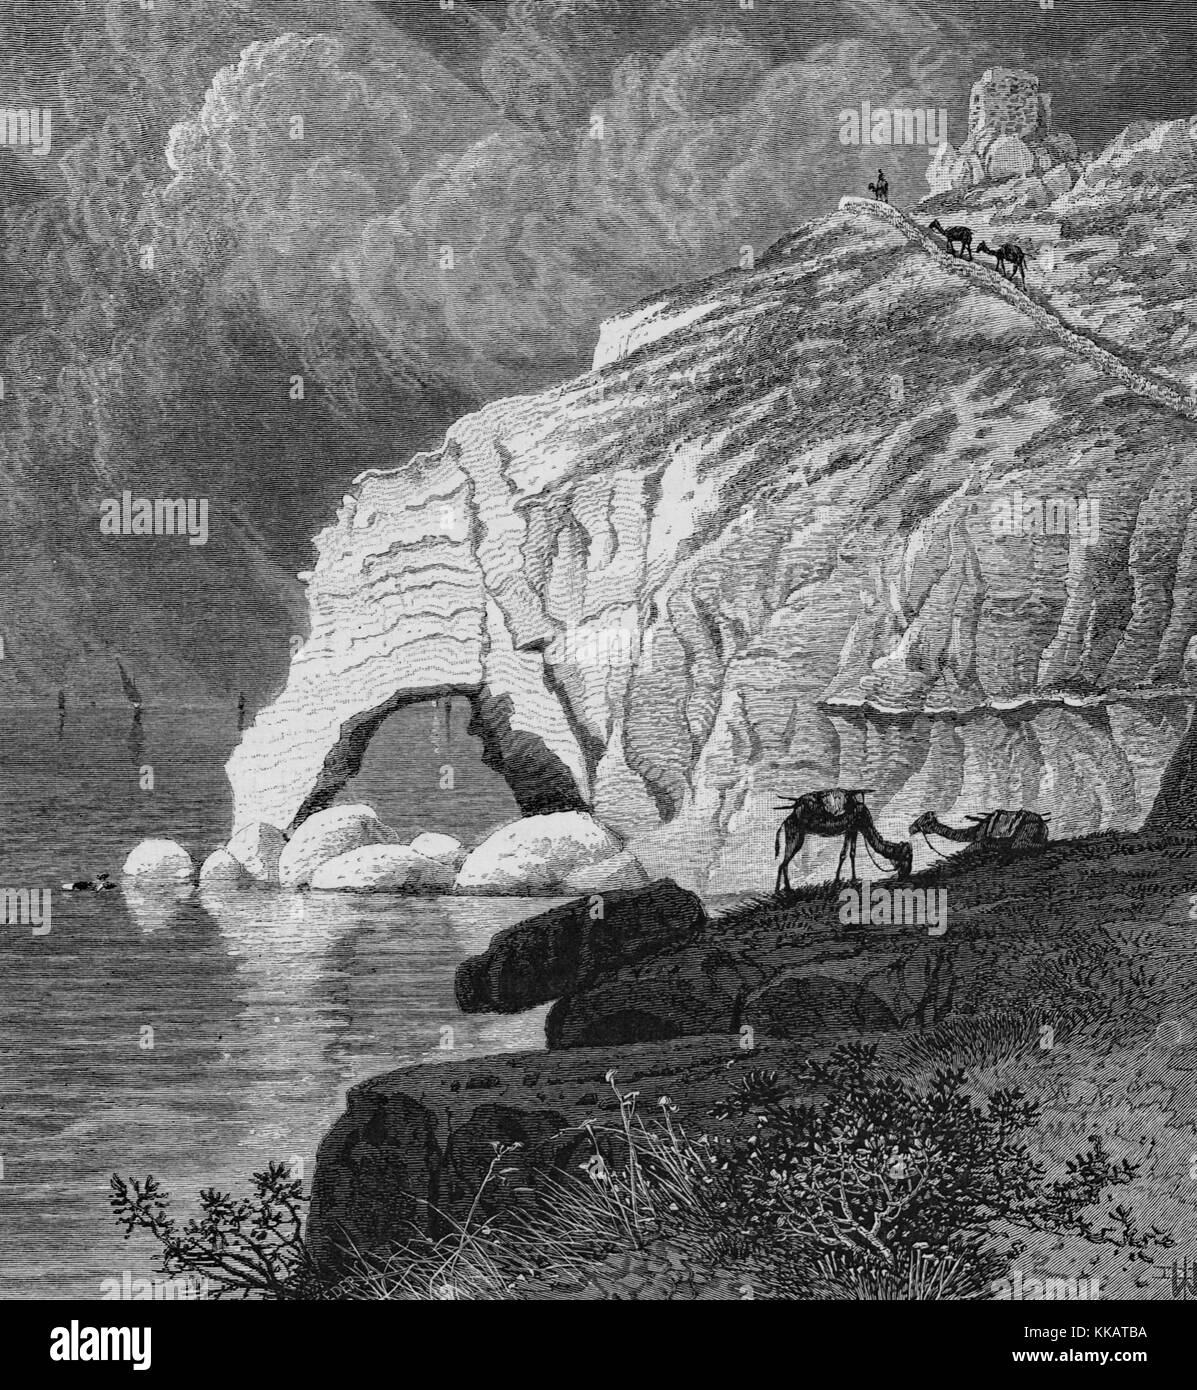 Une représentation de l'échelle de Tyr, un débris de roche road que l'on croyait être la limite nord de la terre sainte juive selon des sources talmudiques, Liban, 1882. À partir de la Bibliothèque publique de New York. Banque D'Images